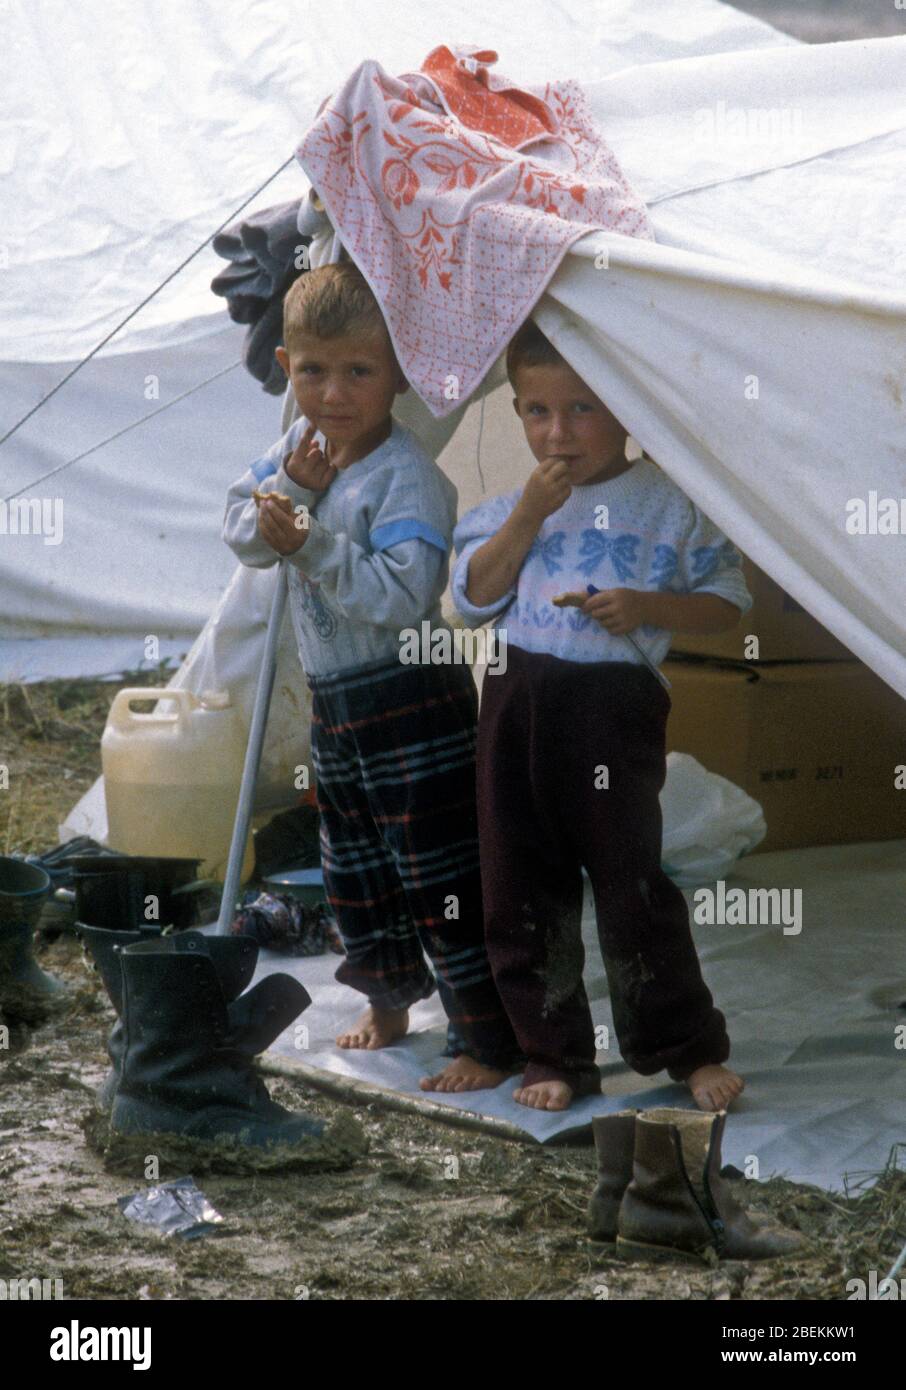 1995 Tuzla, Bosnien - Obdachlose Kinderflüchtlinge auf dem Flugplatz Tuzla vorübergehendes Flüchtlingslager für bosnische Muslime, die vor dem Massaker von Srebrenica während des Bosnienkrieges fliehen Stockfoto